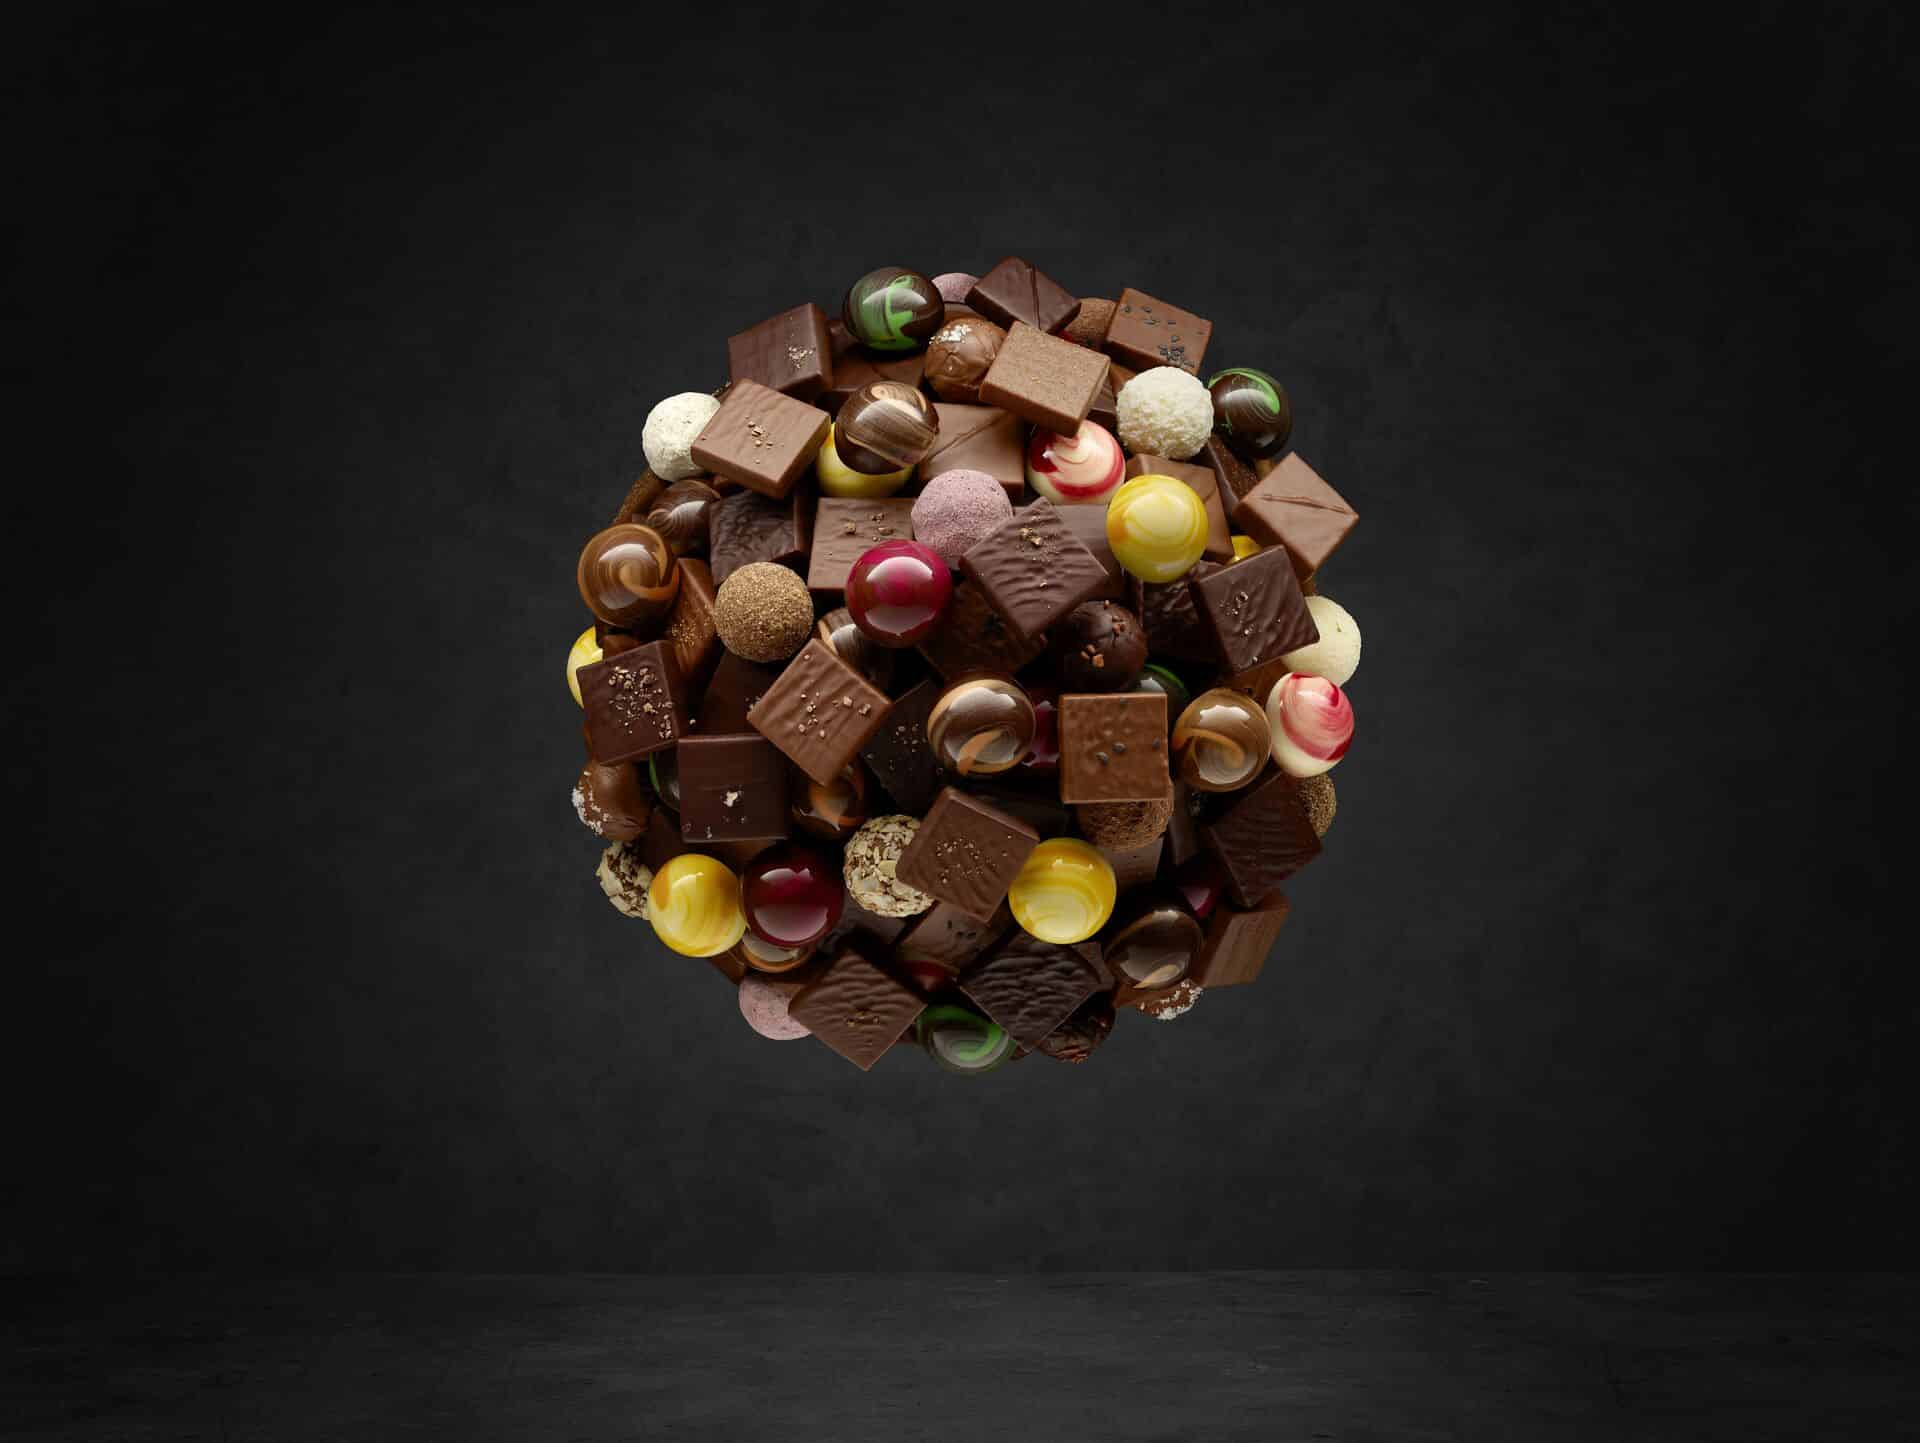 Kevin Kugel Chocolatier